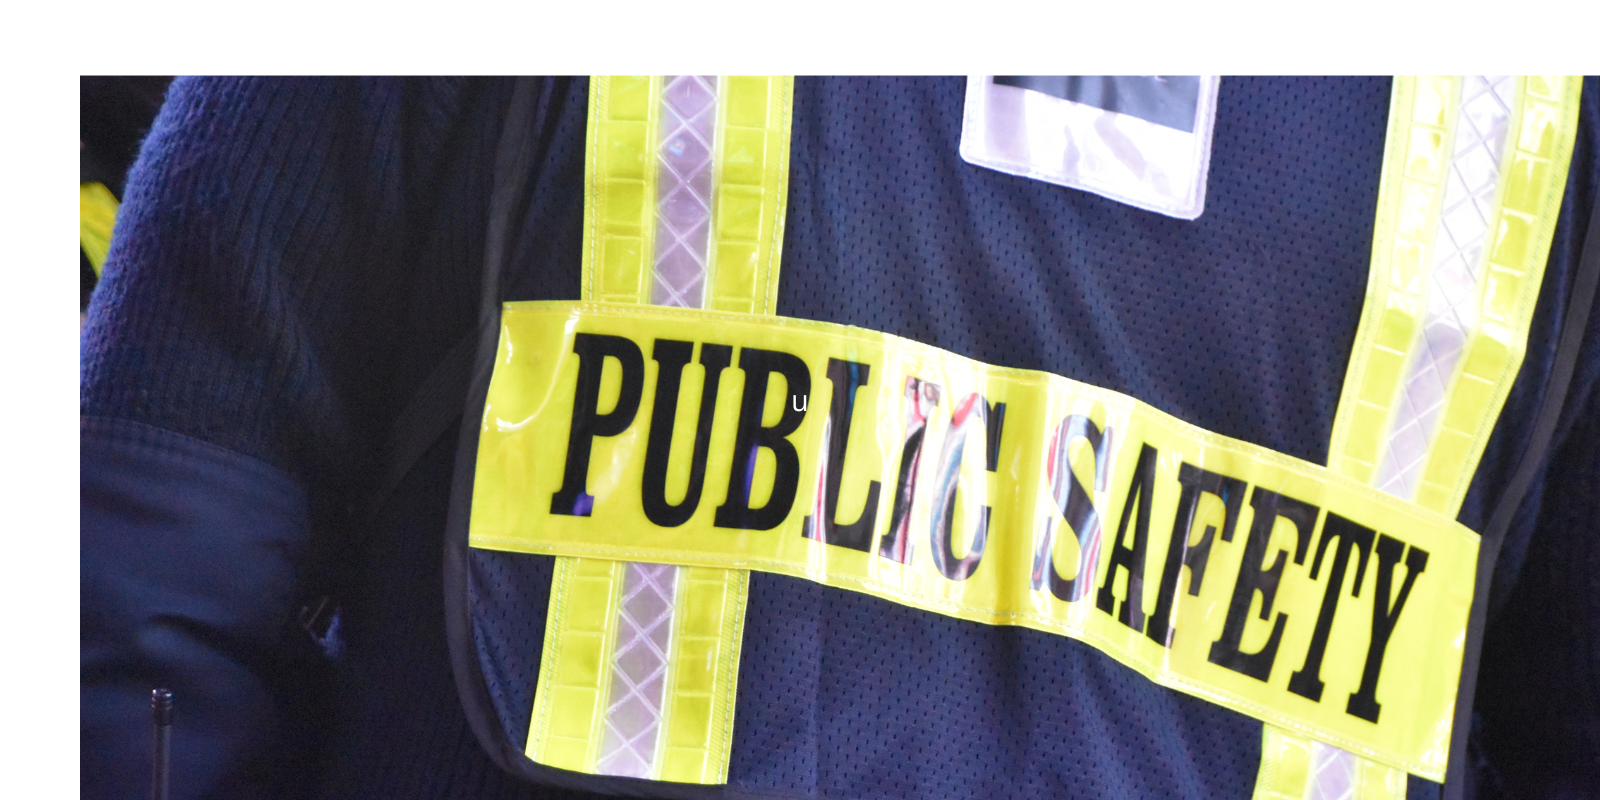 public safety vest